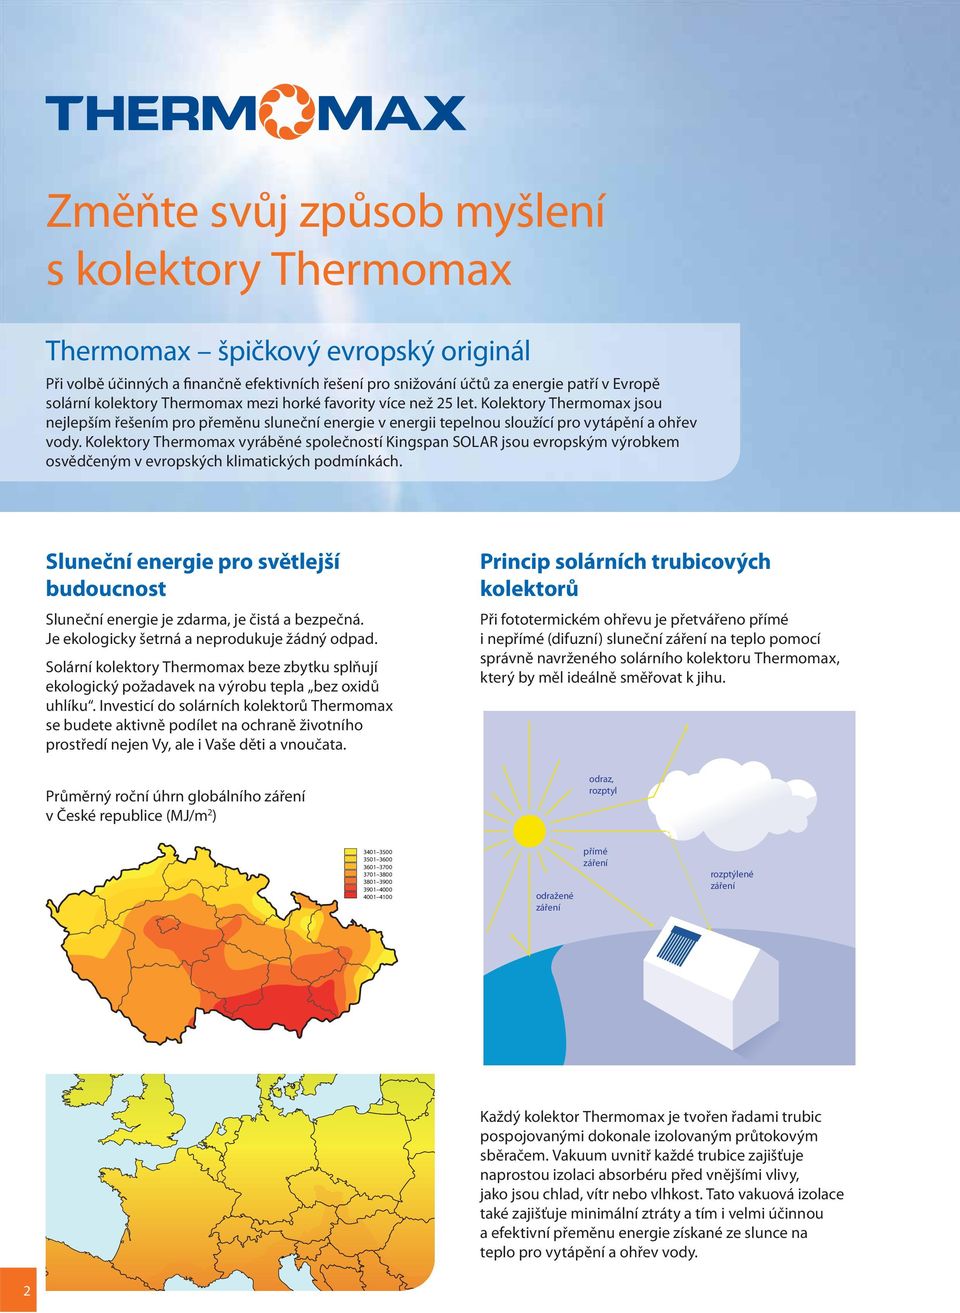 Kolektory Thermomax vyráběné společností Kingspan SOLAR jsou evropským výrobkem osvědčeným v evropských klimatických podmínkách.